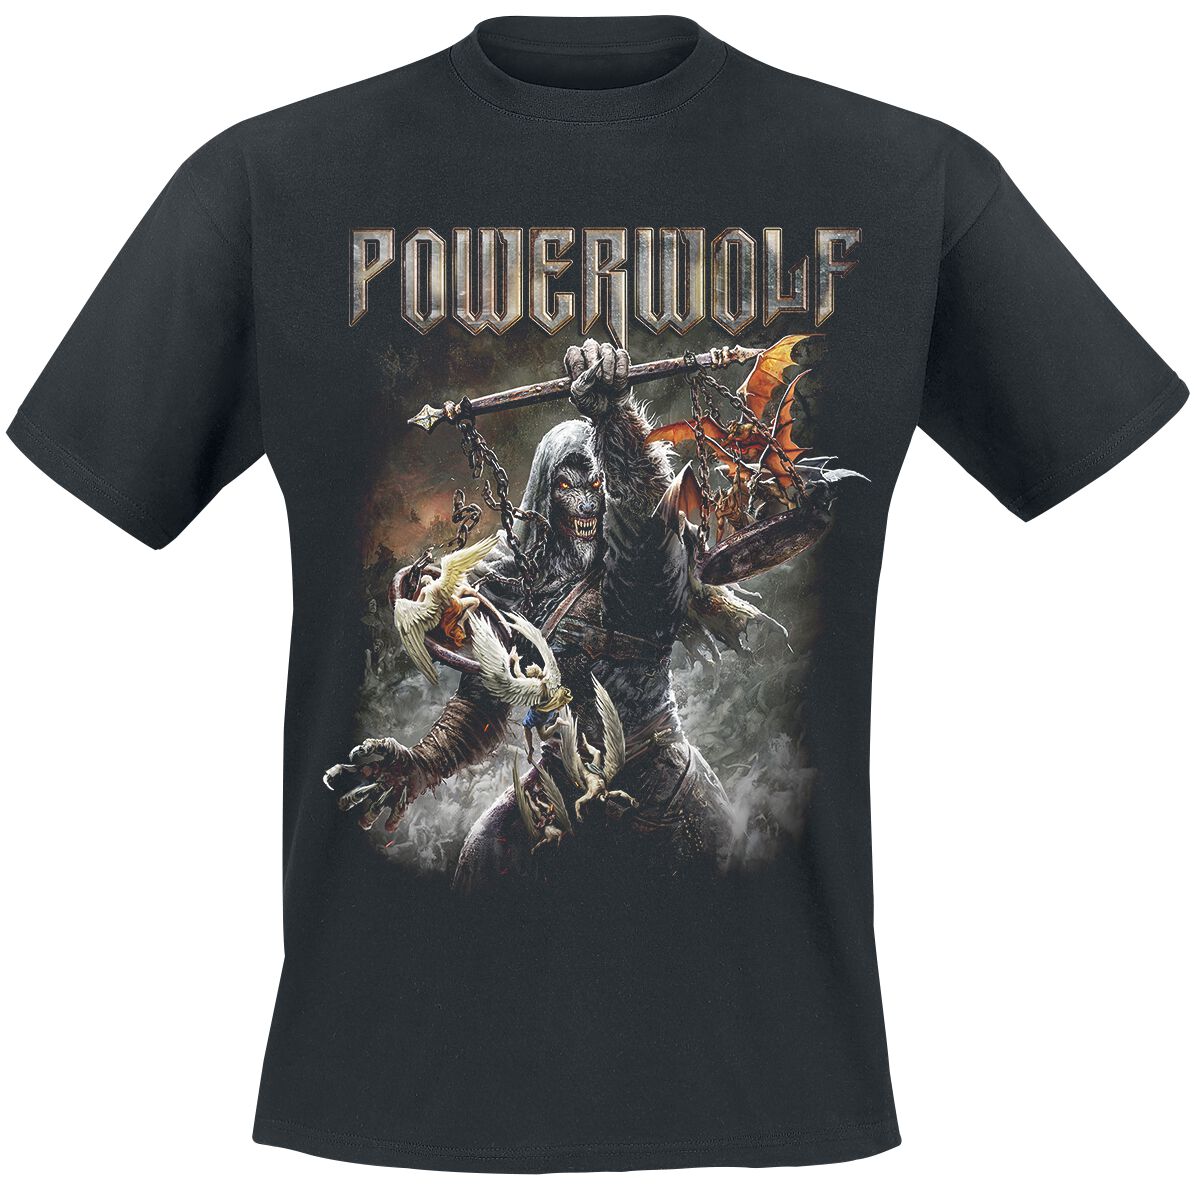 Powerwolf T-Shirt - Call Of The Wild - M bis 5XL - für Männer - Größe 4XL - schwarz  - Lizenziertes Merchandise!